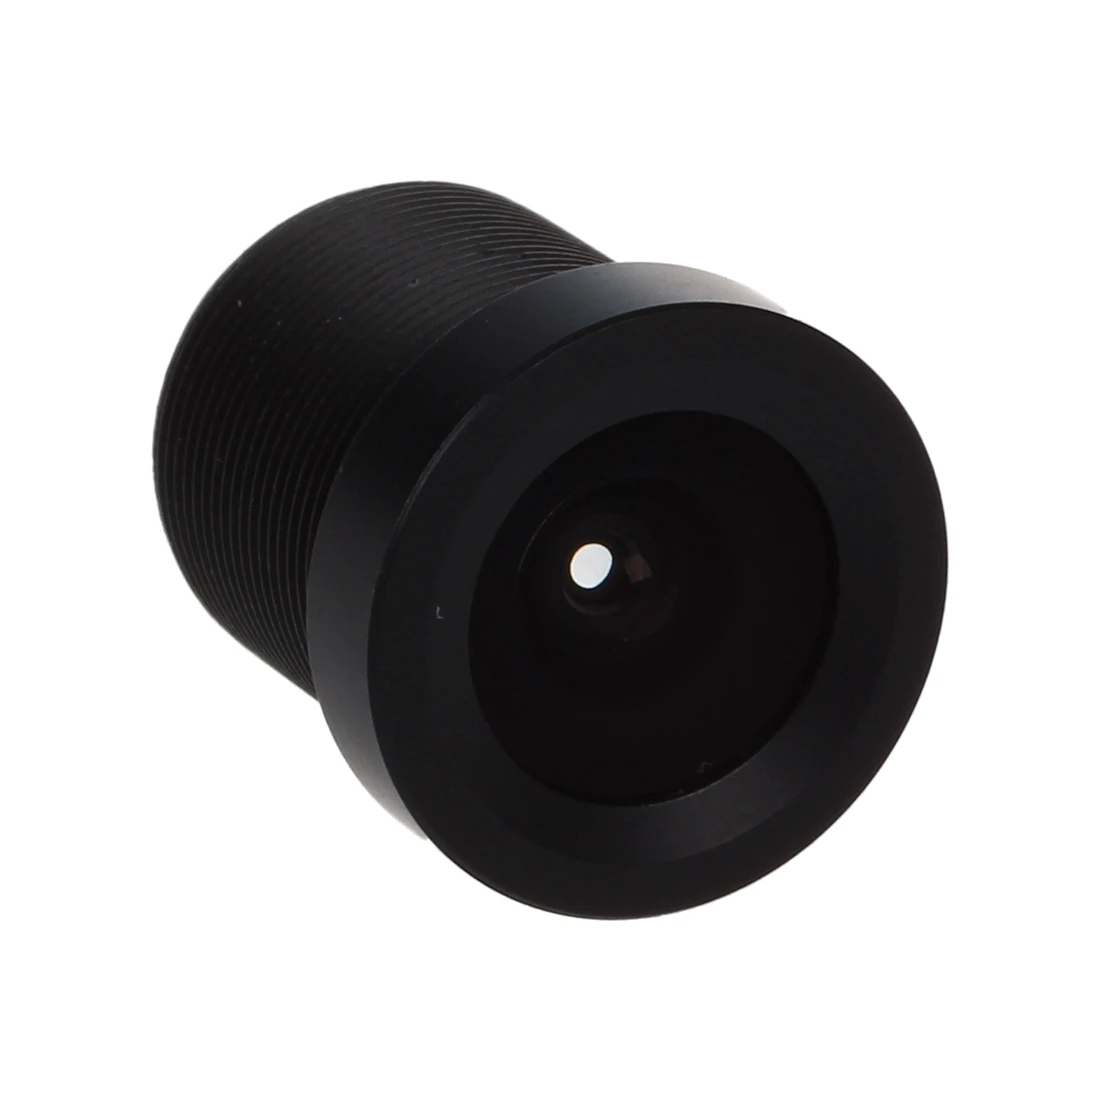 2 упаковки 1/3 CCTV 2,8 мм объектив черный для CCD камера слежения